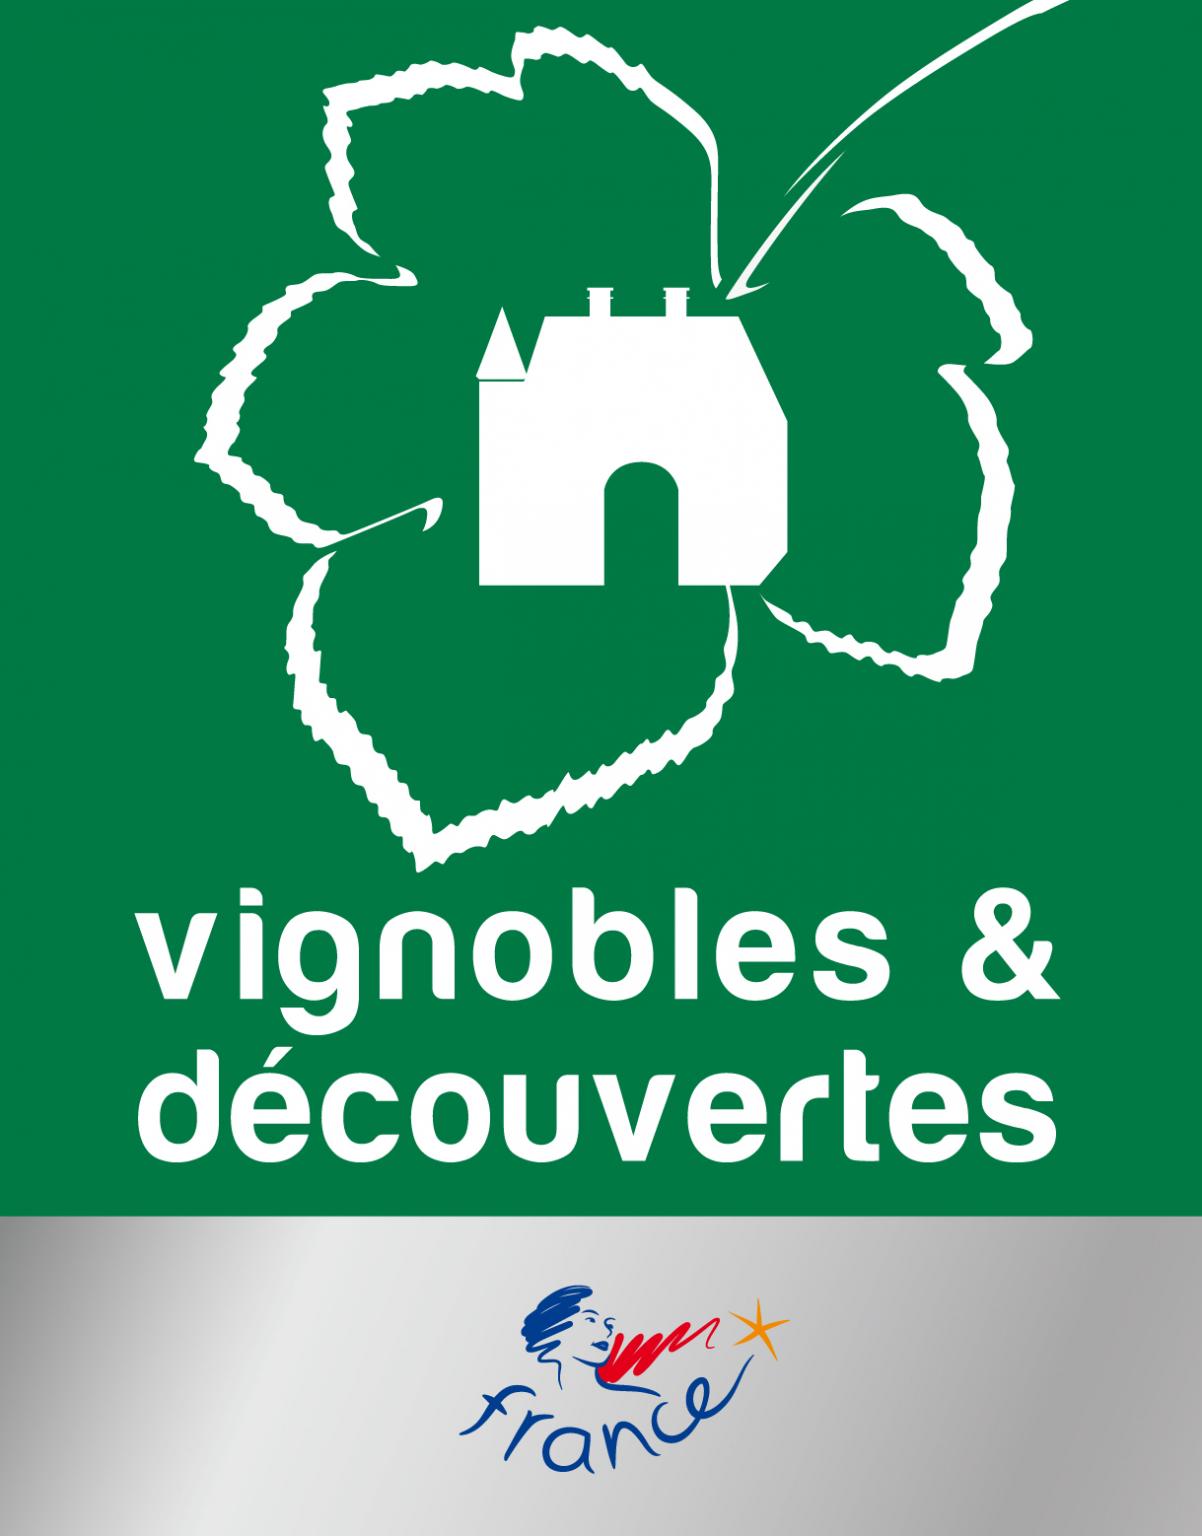 Image result for Jurançon terroir: the Vignobles & Découvertes label